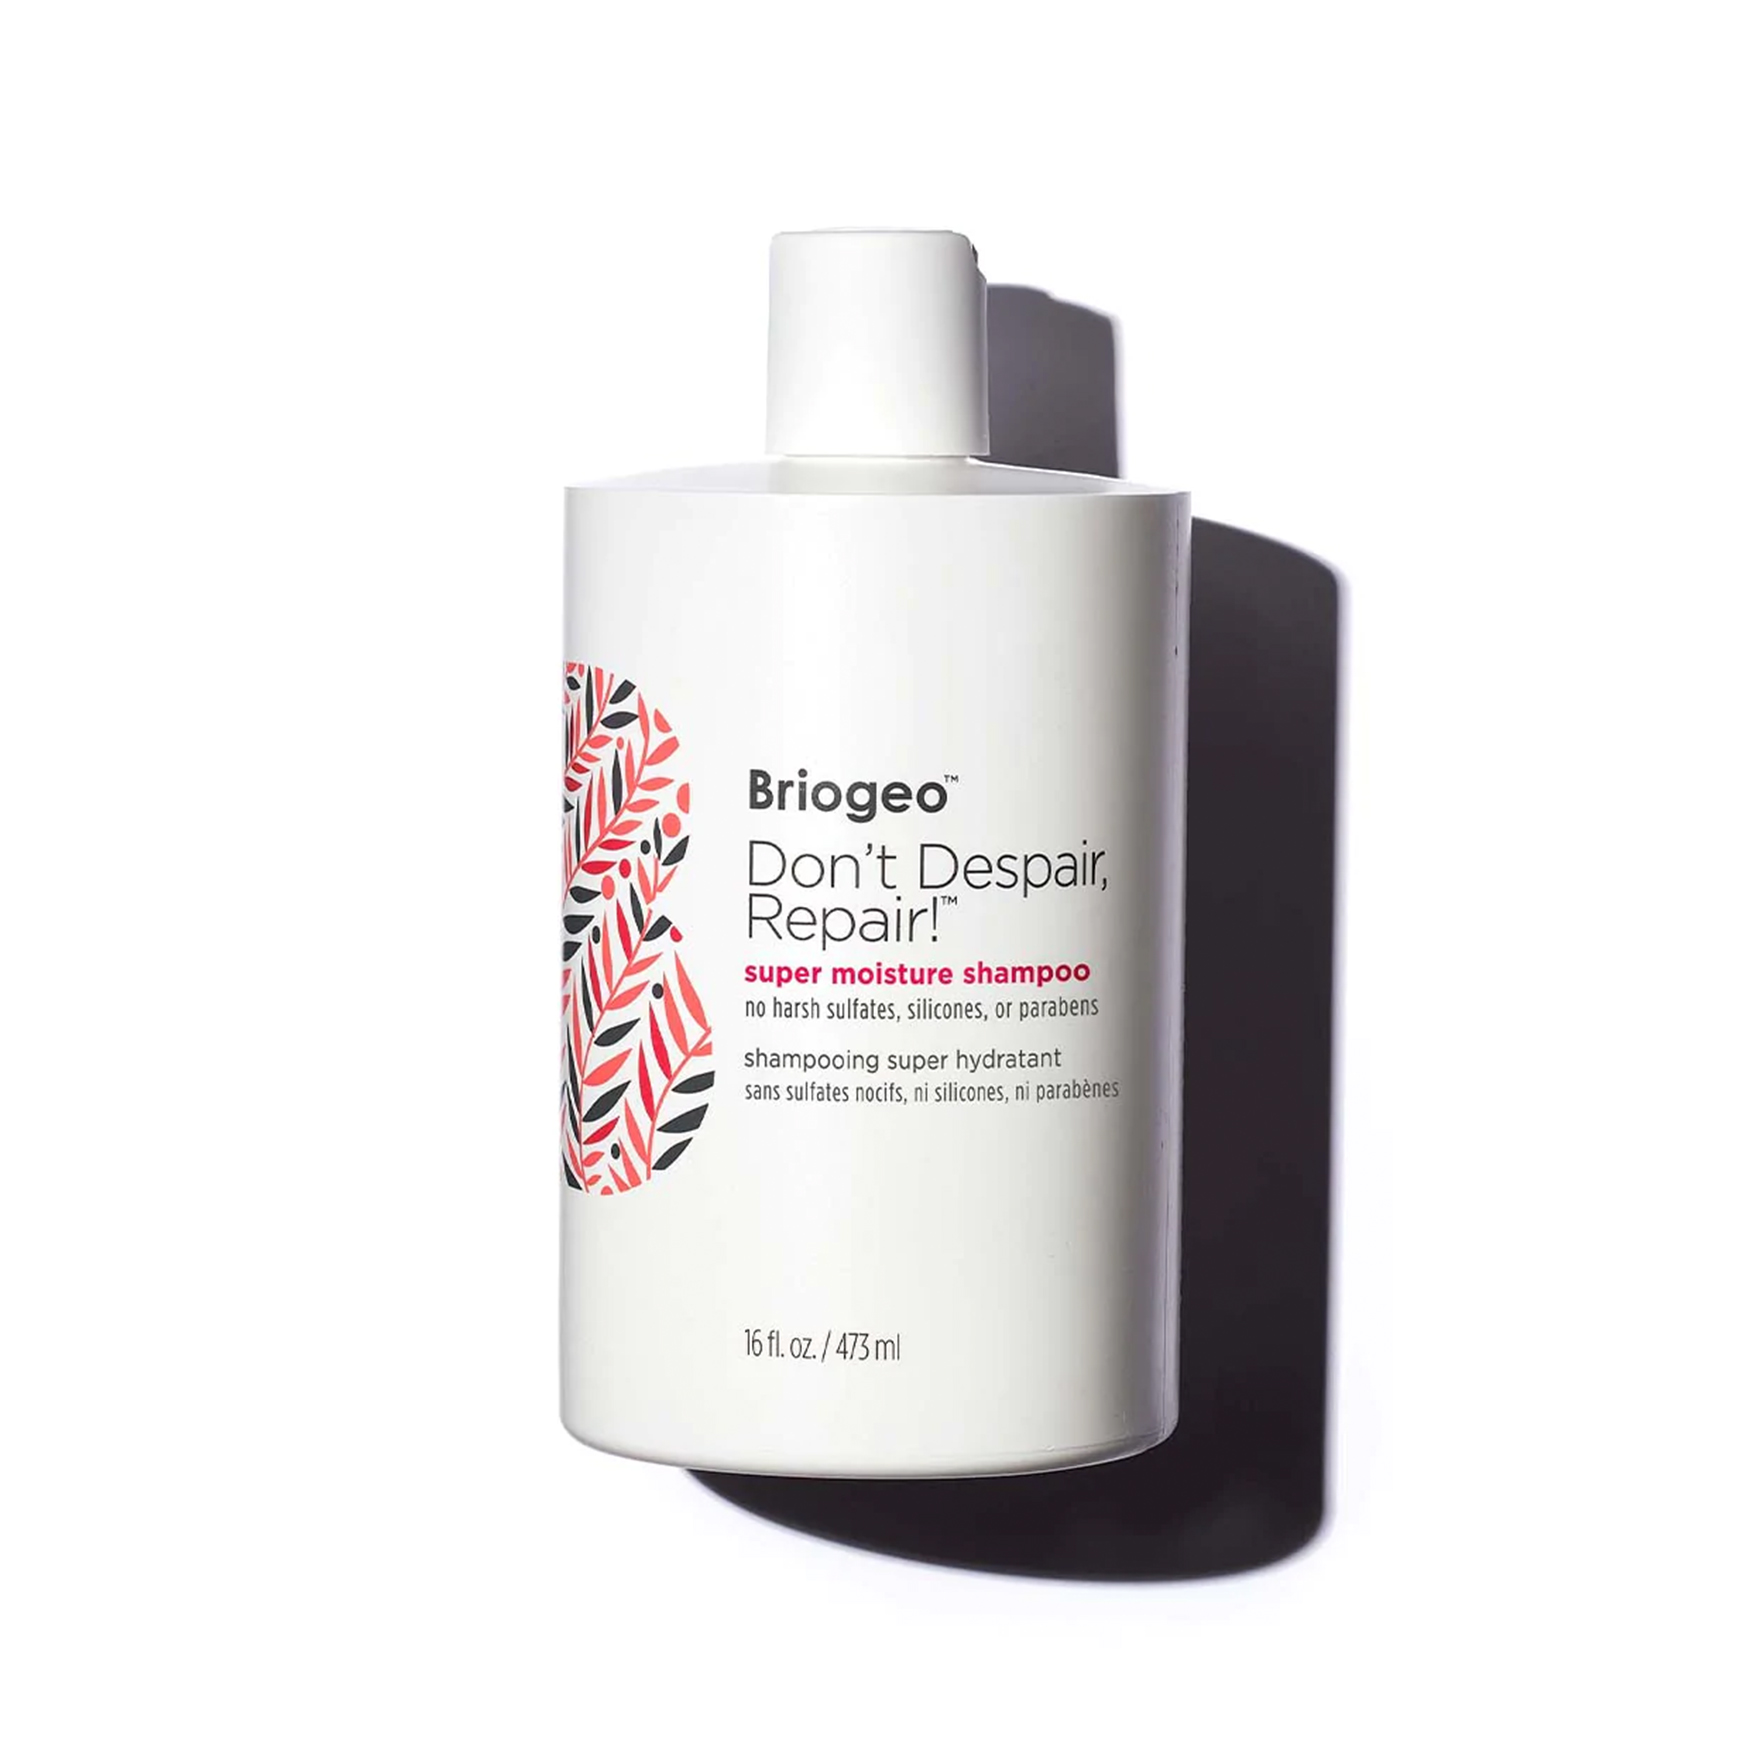 Briogeo Don’t Despair, Repair! Super Moisture Shampoo For Damaged Hair